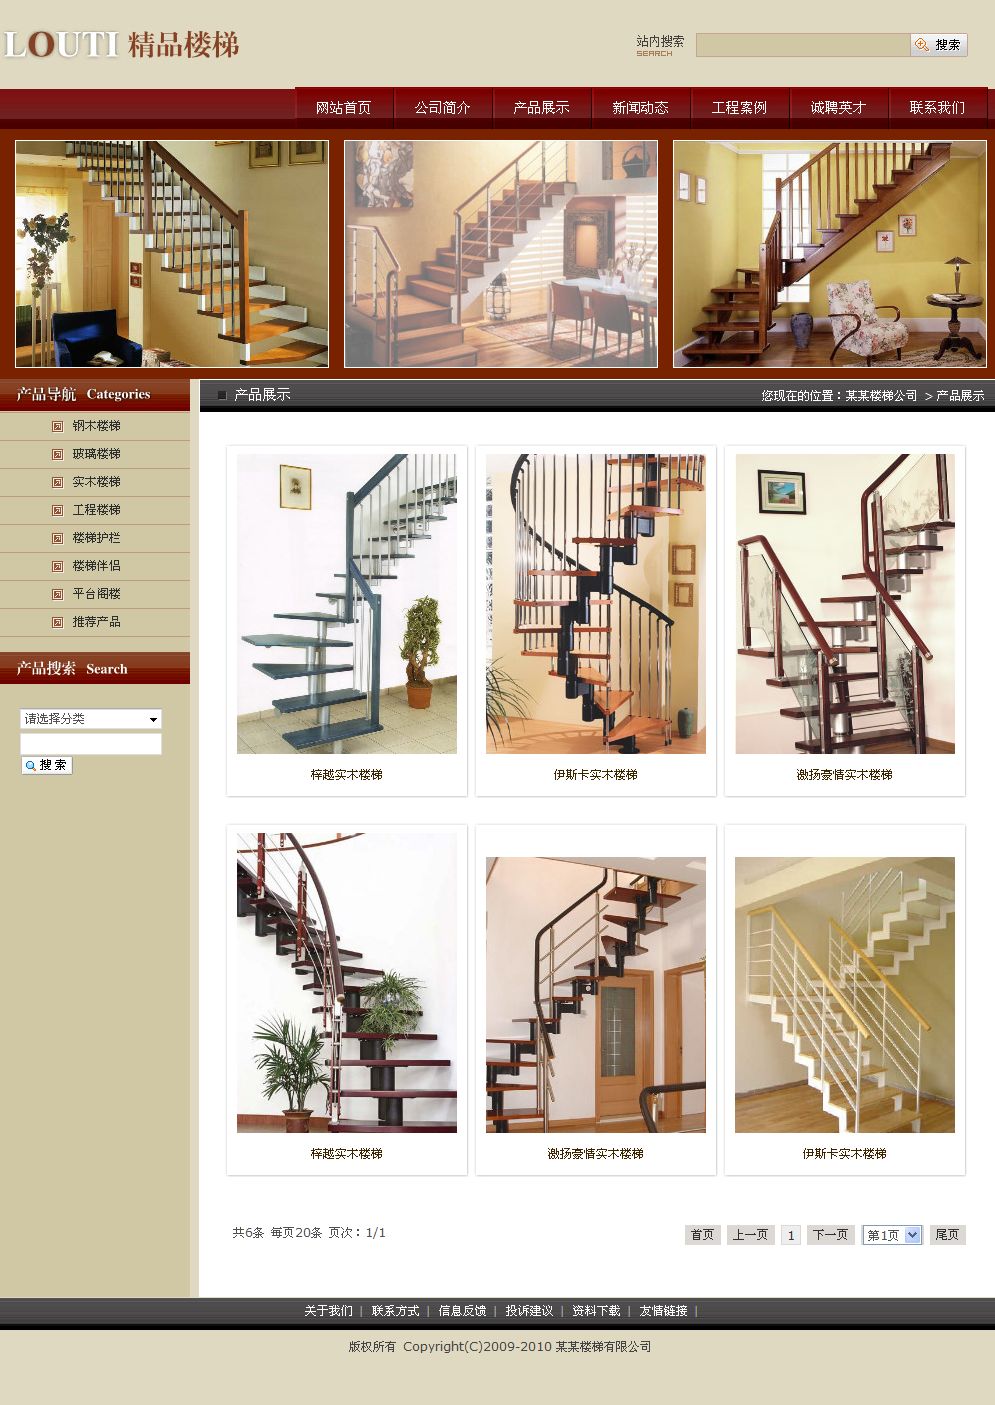 楼梯制造公司网站产品列表页